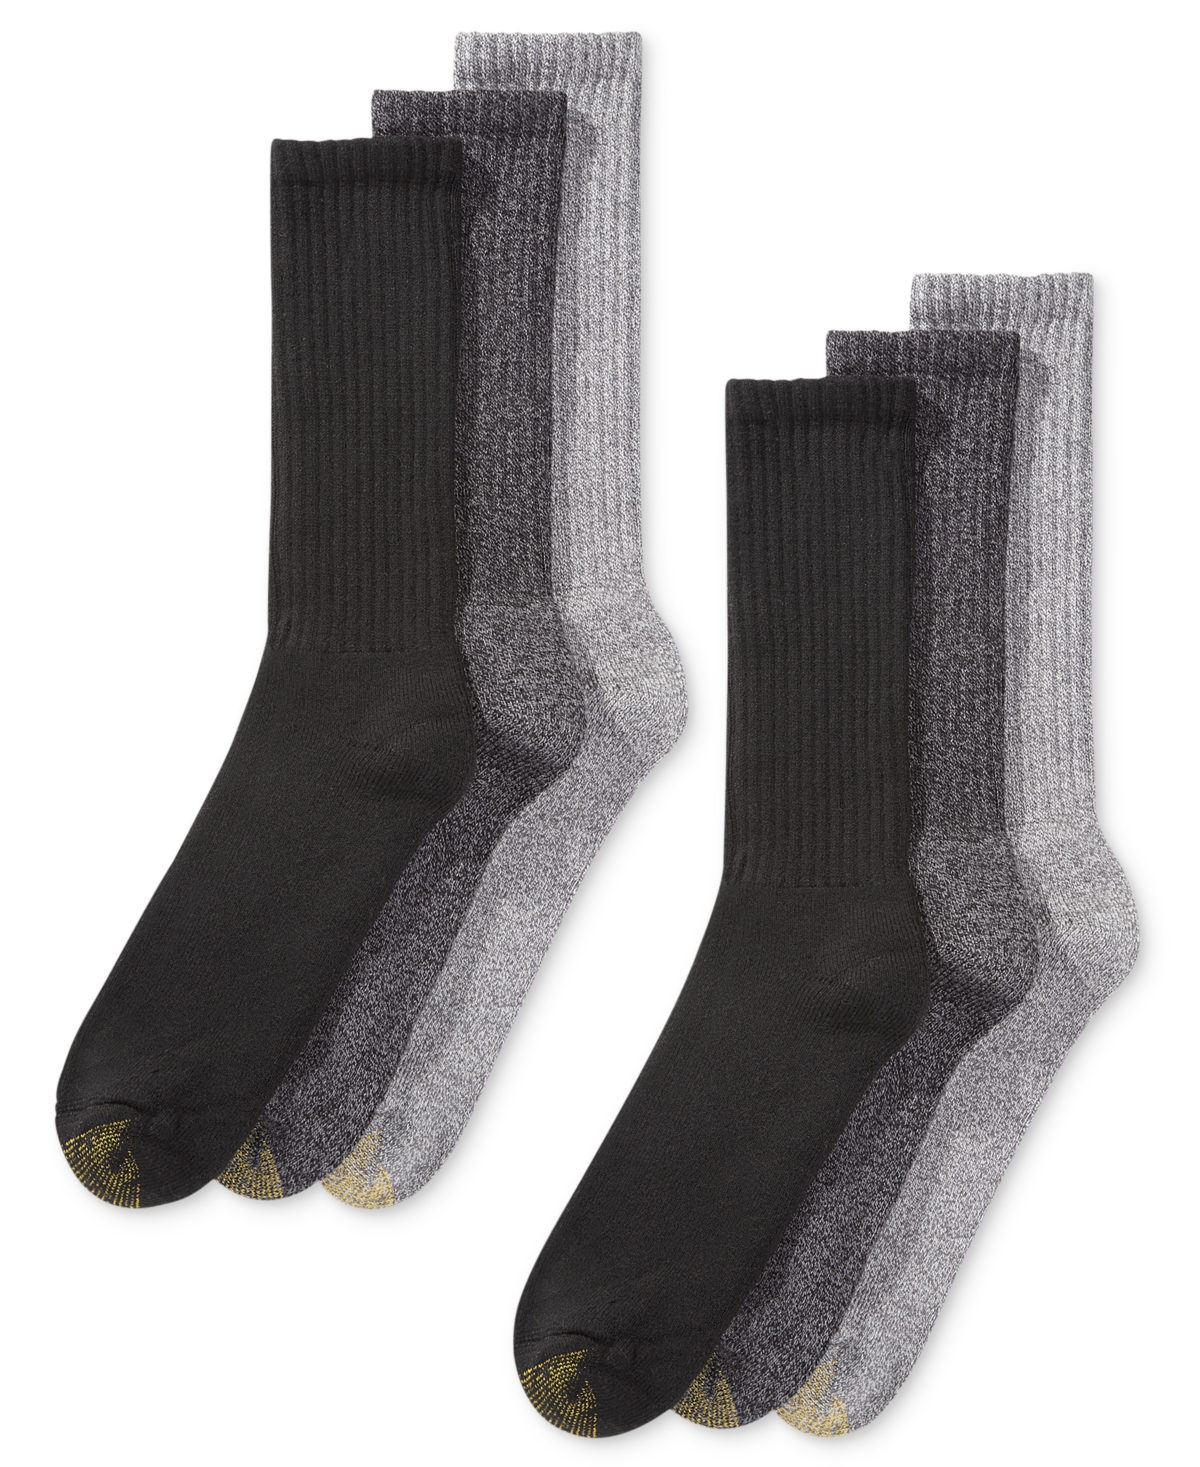 Men's 6-Pack Casual Harrington Socks - White